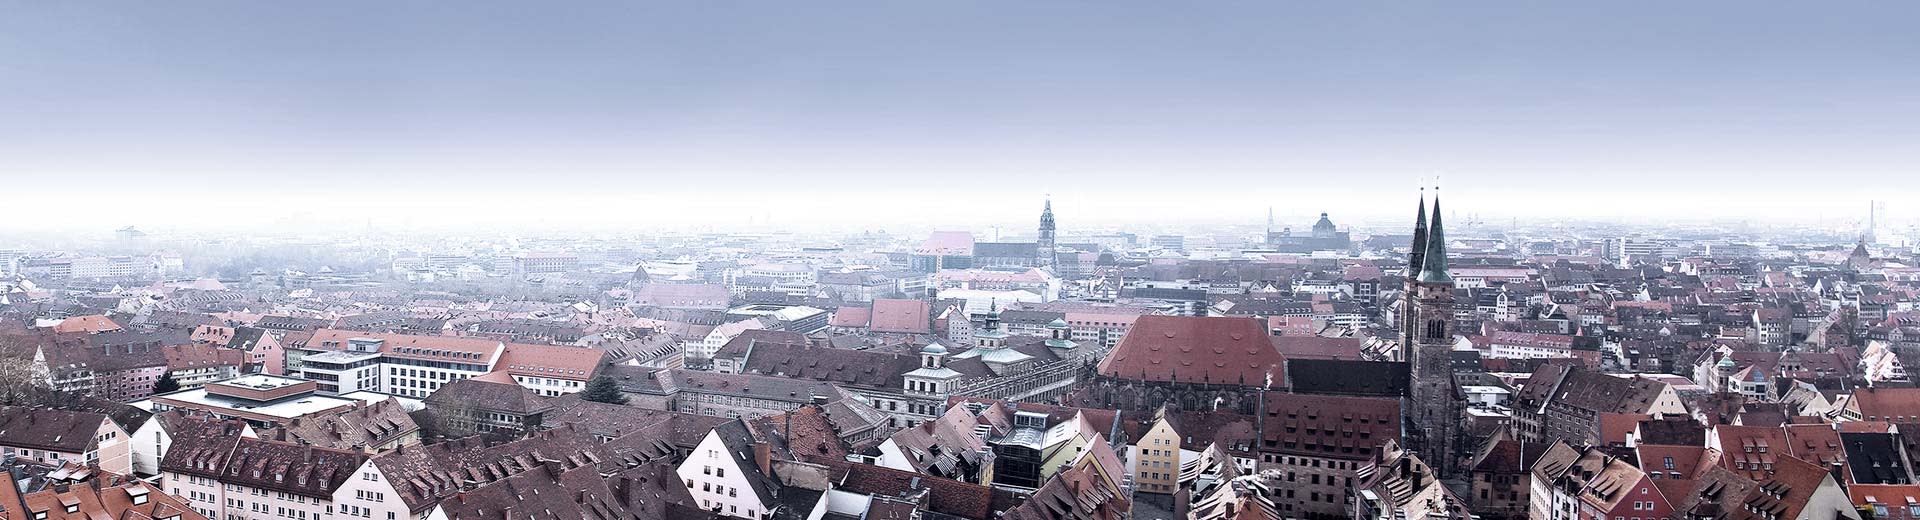 历史悠久的纽伦堡的红色屋顶和教堂尖顶。